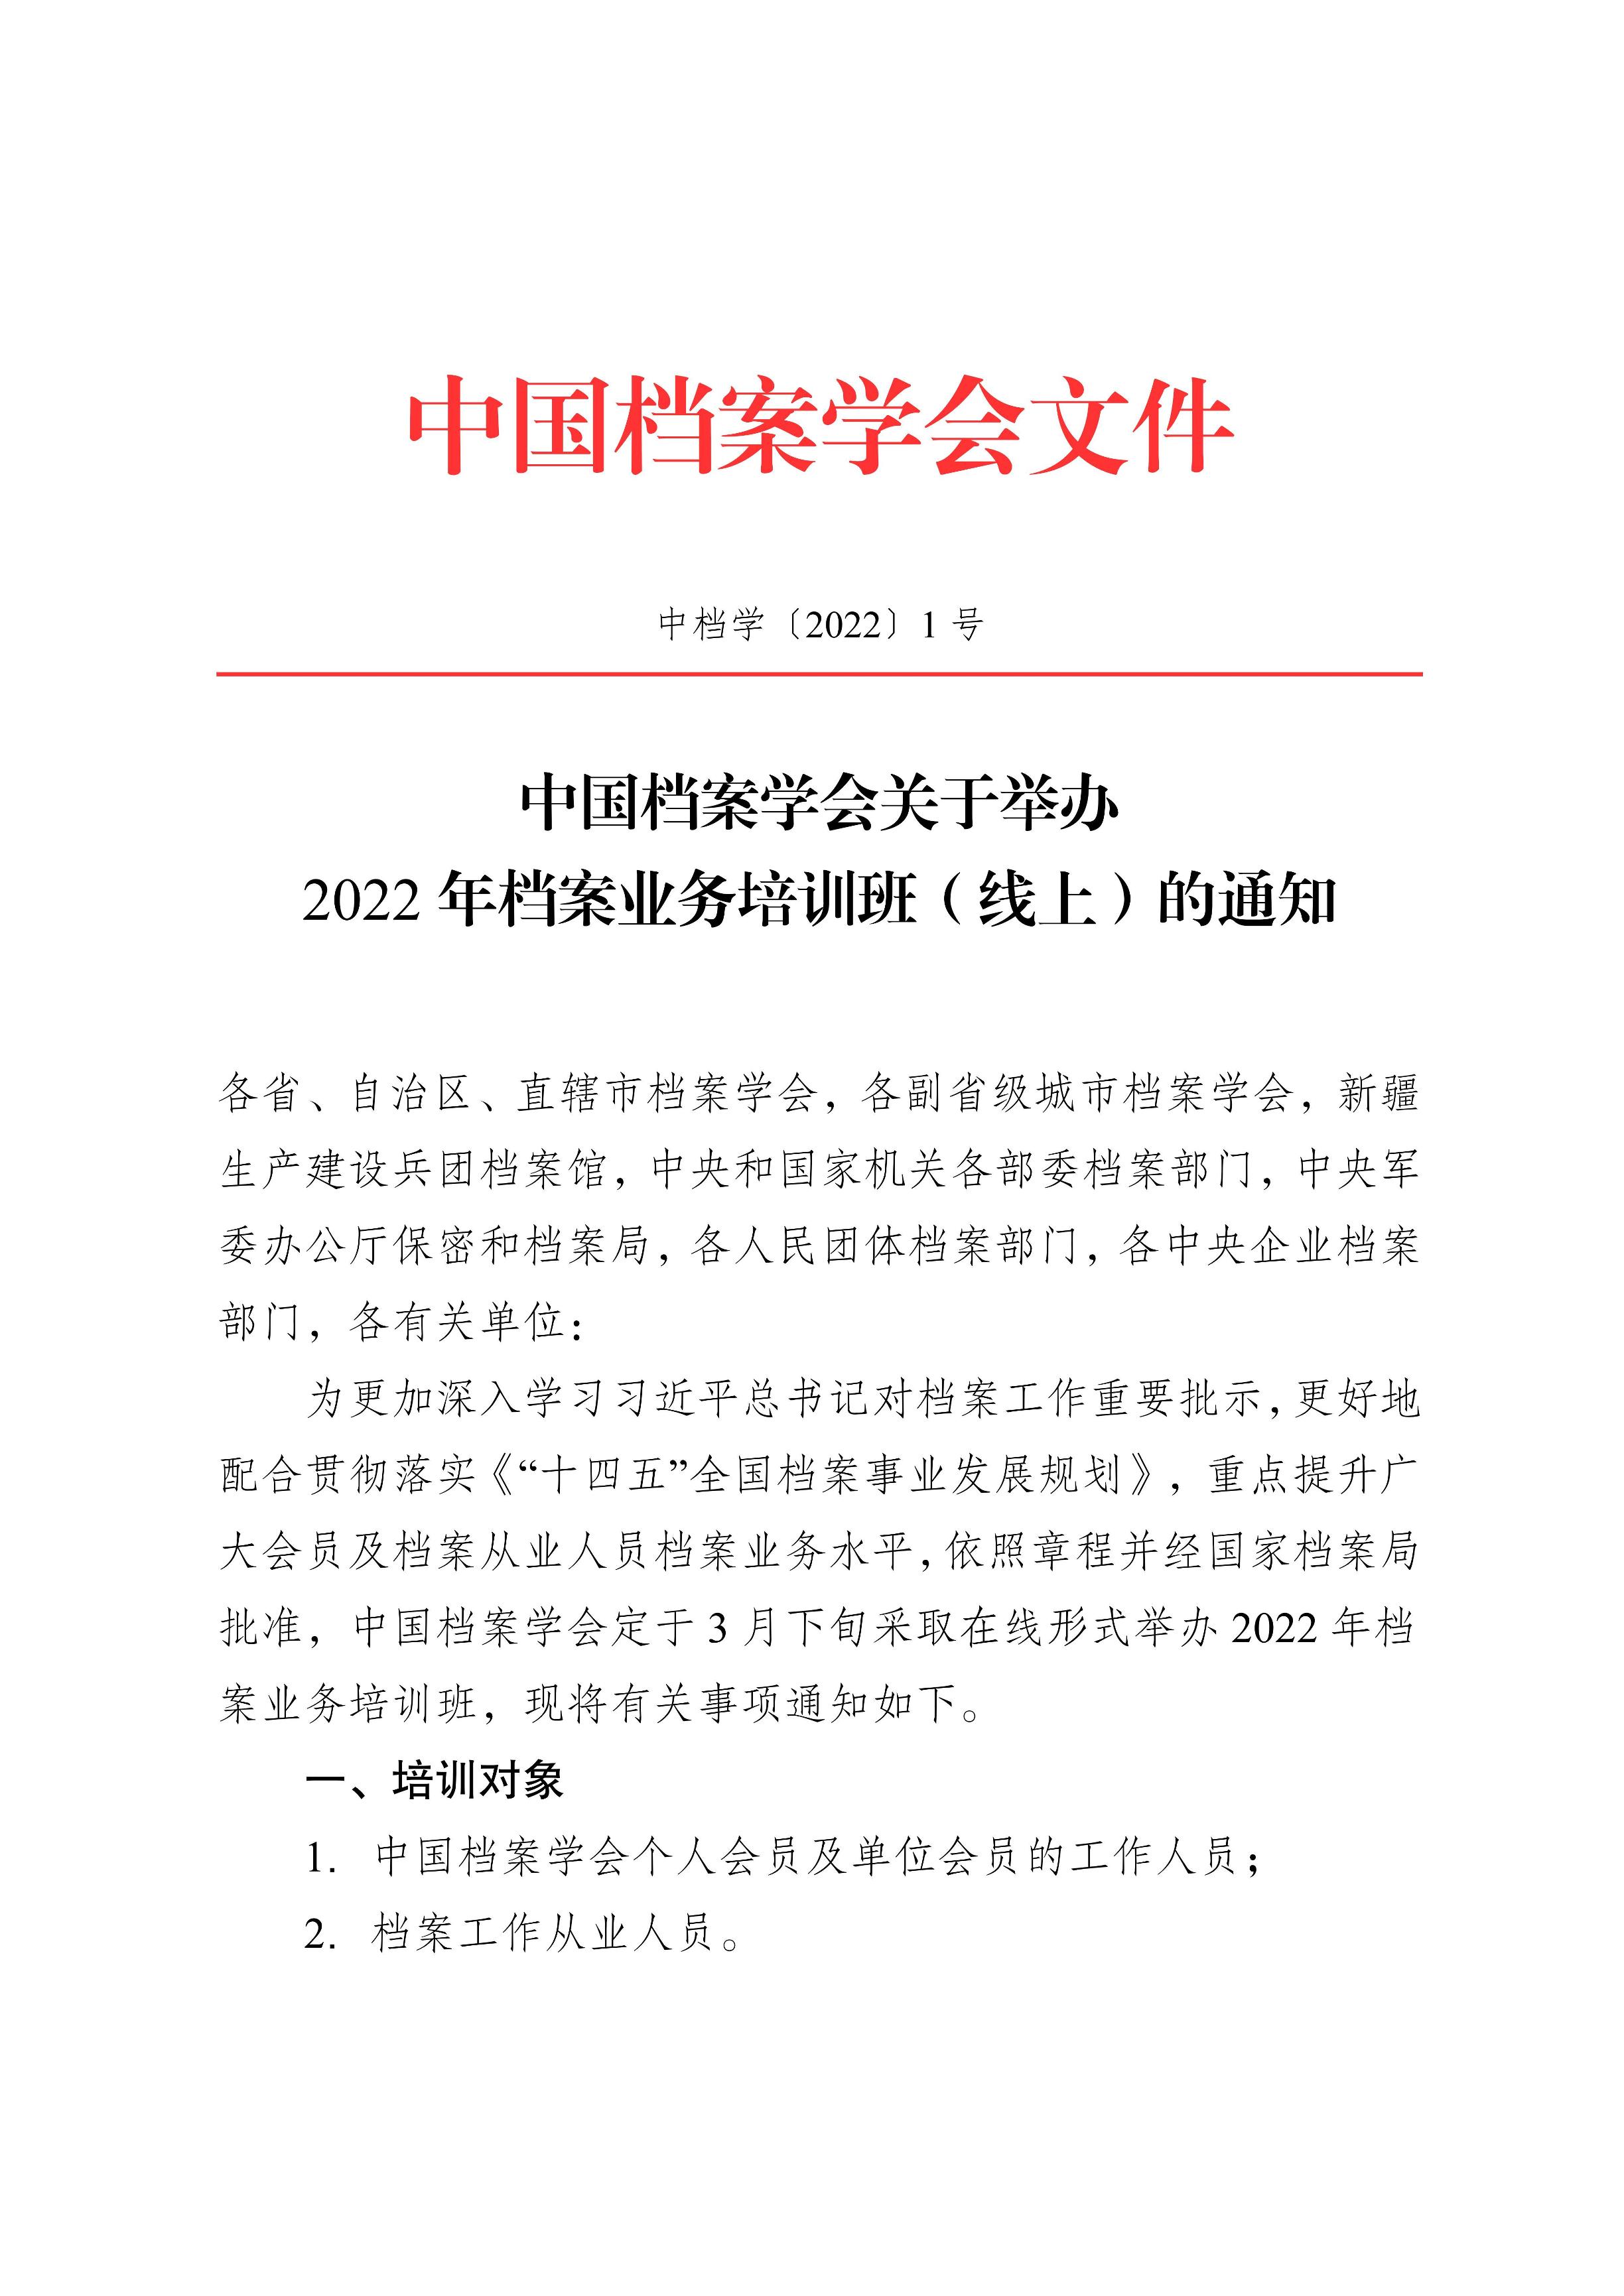 [2022]1号 中国档案学会关于2022年档案业务培训班（线上）的通知-0